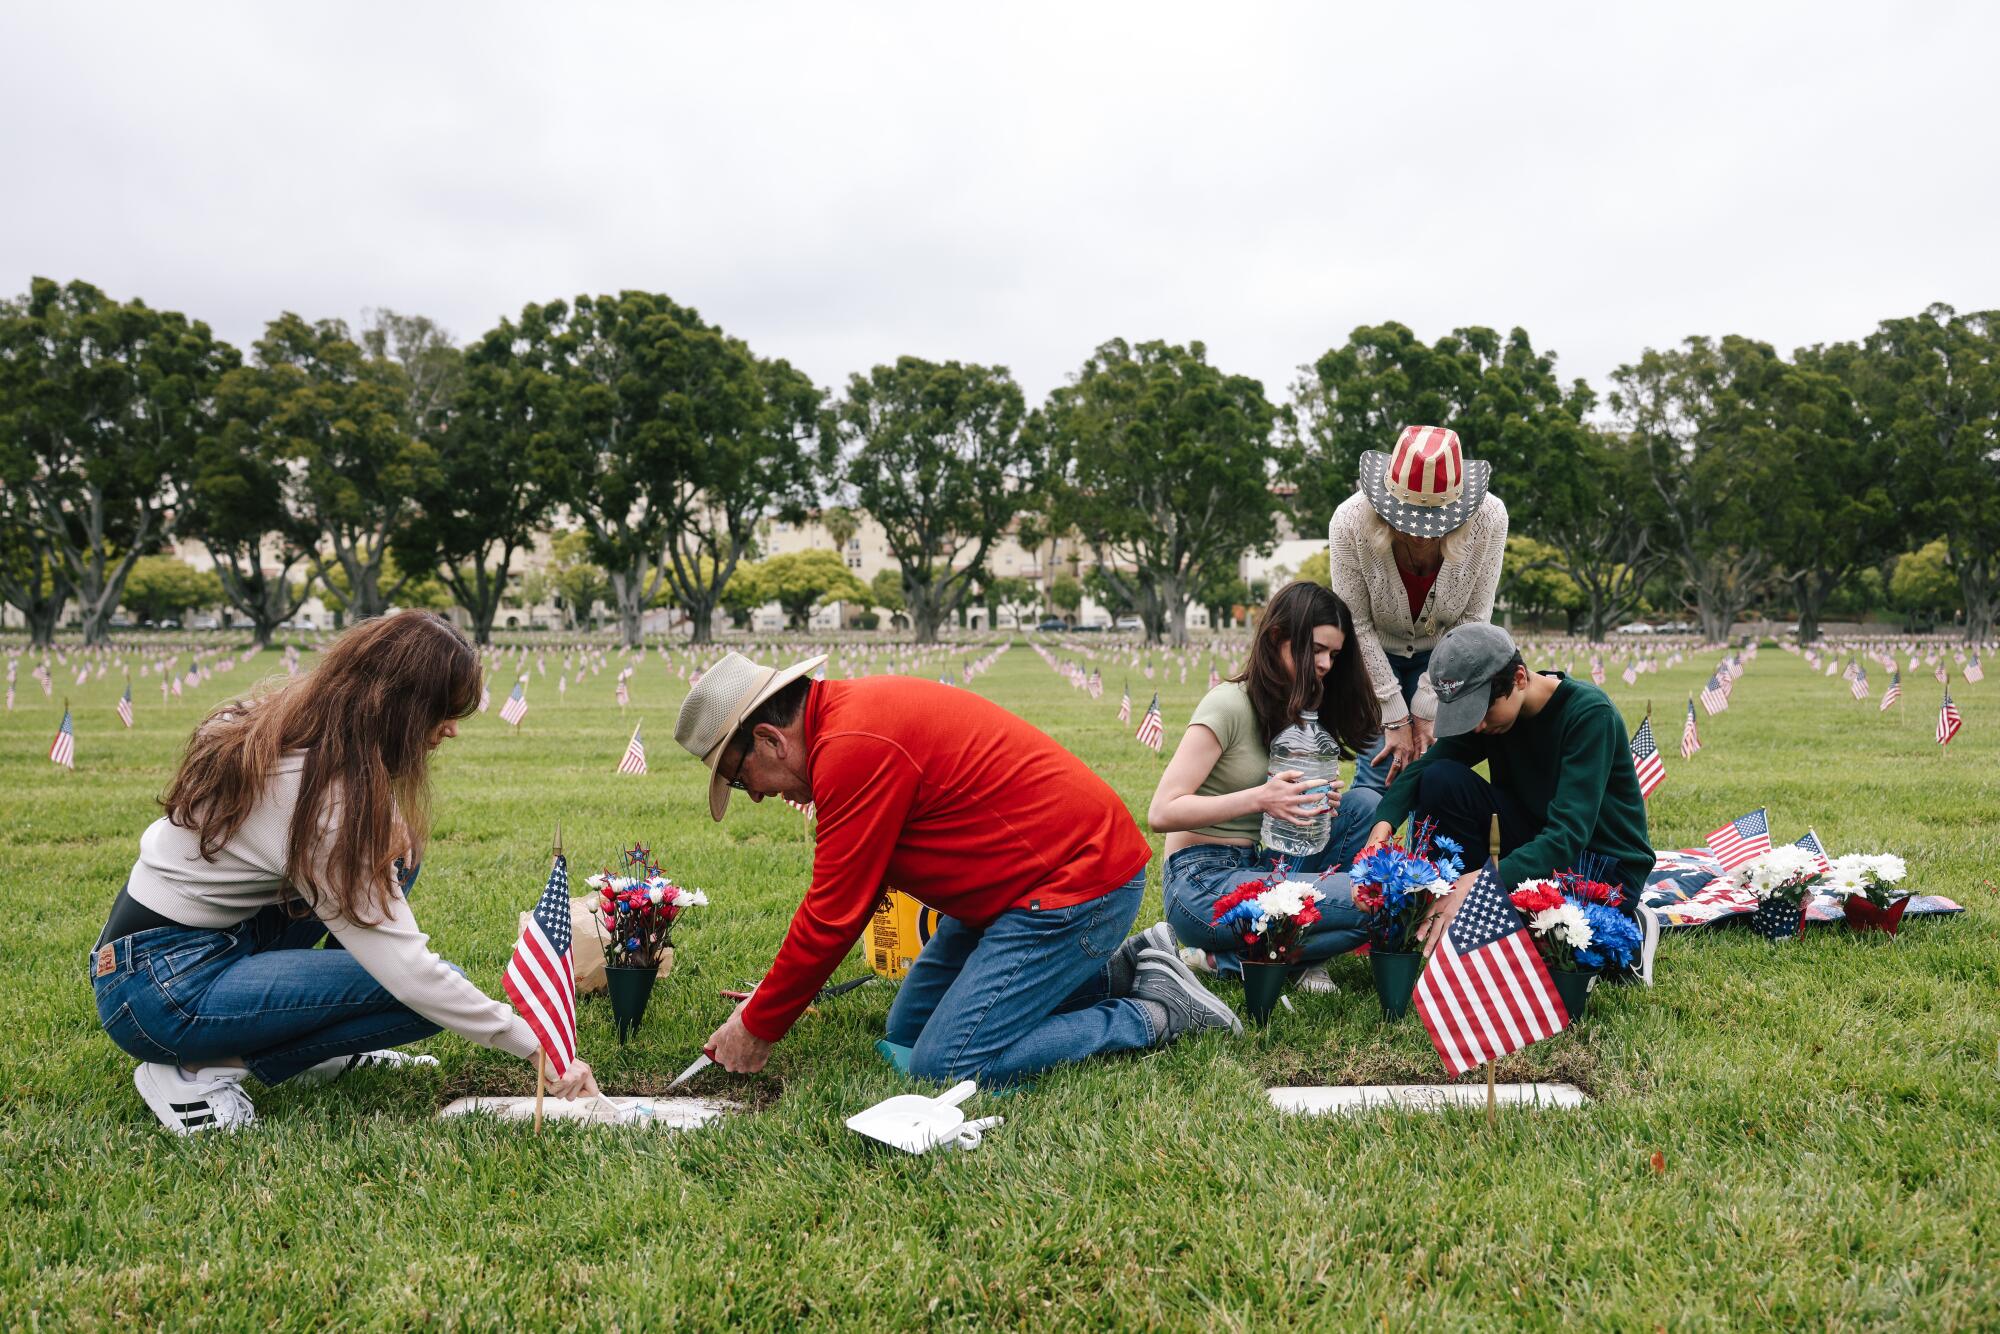 Quatro pessoas em um cemitério se ajoelham e limpam sepulturas.